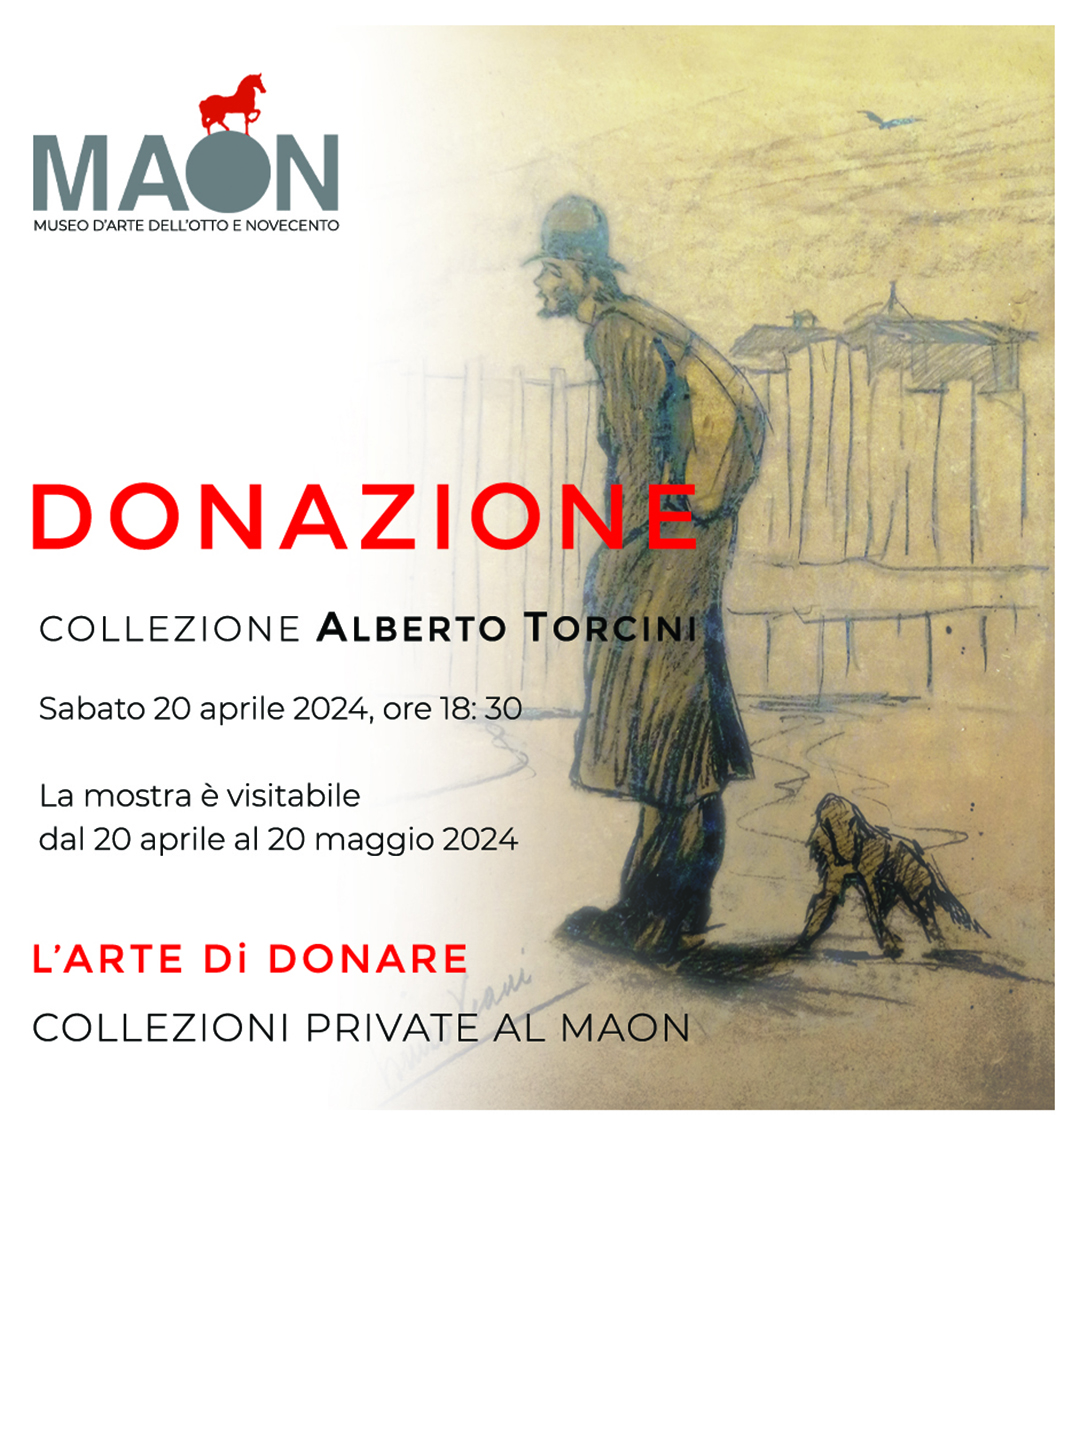 MAON, Museo d'Arte dell'Otto e Novecento